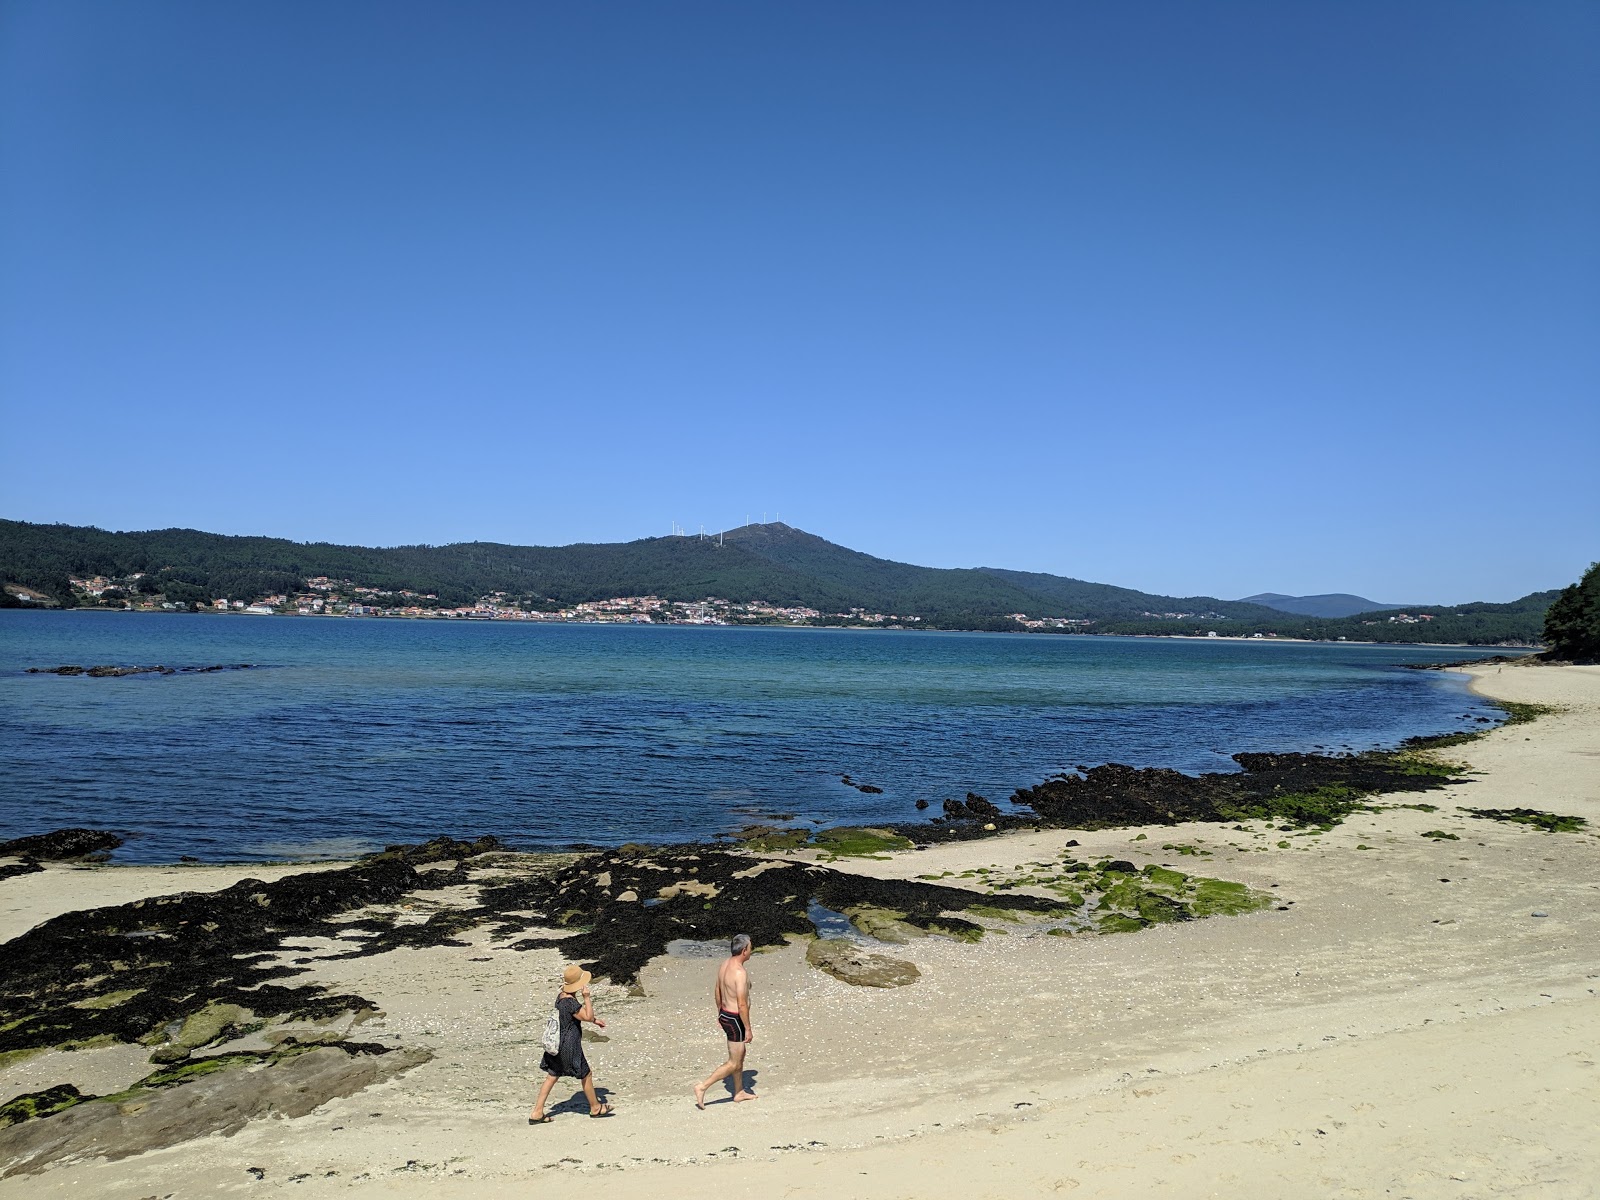 Boa Grande beach'in fotoğrafı geniş plaj ile birlikte